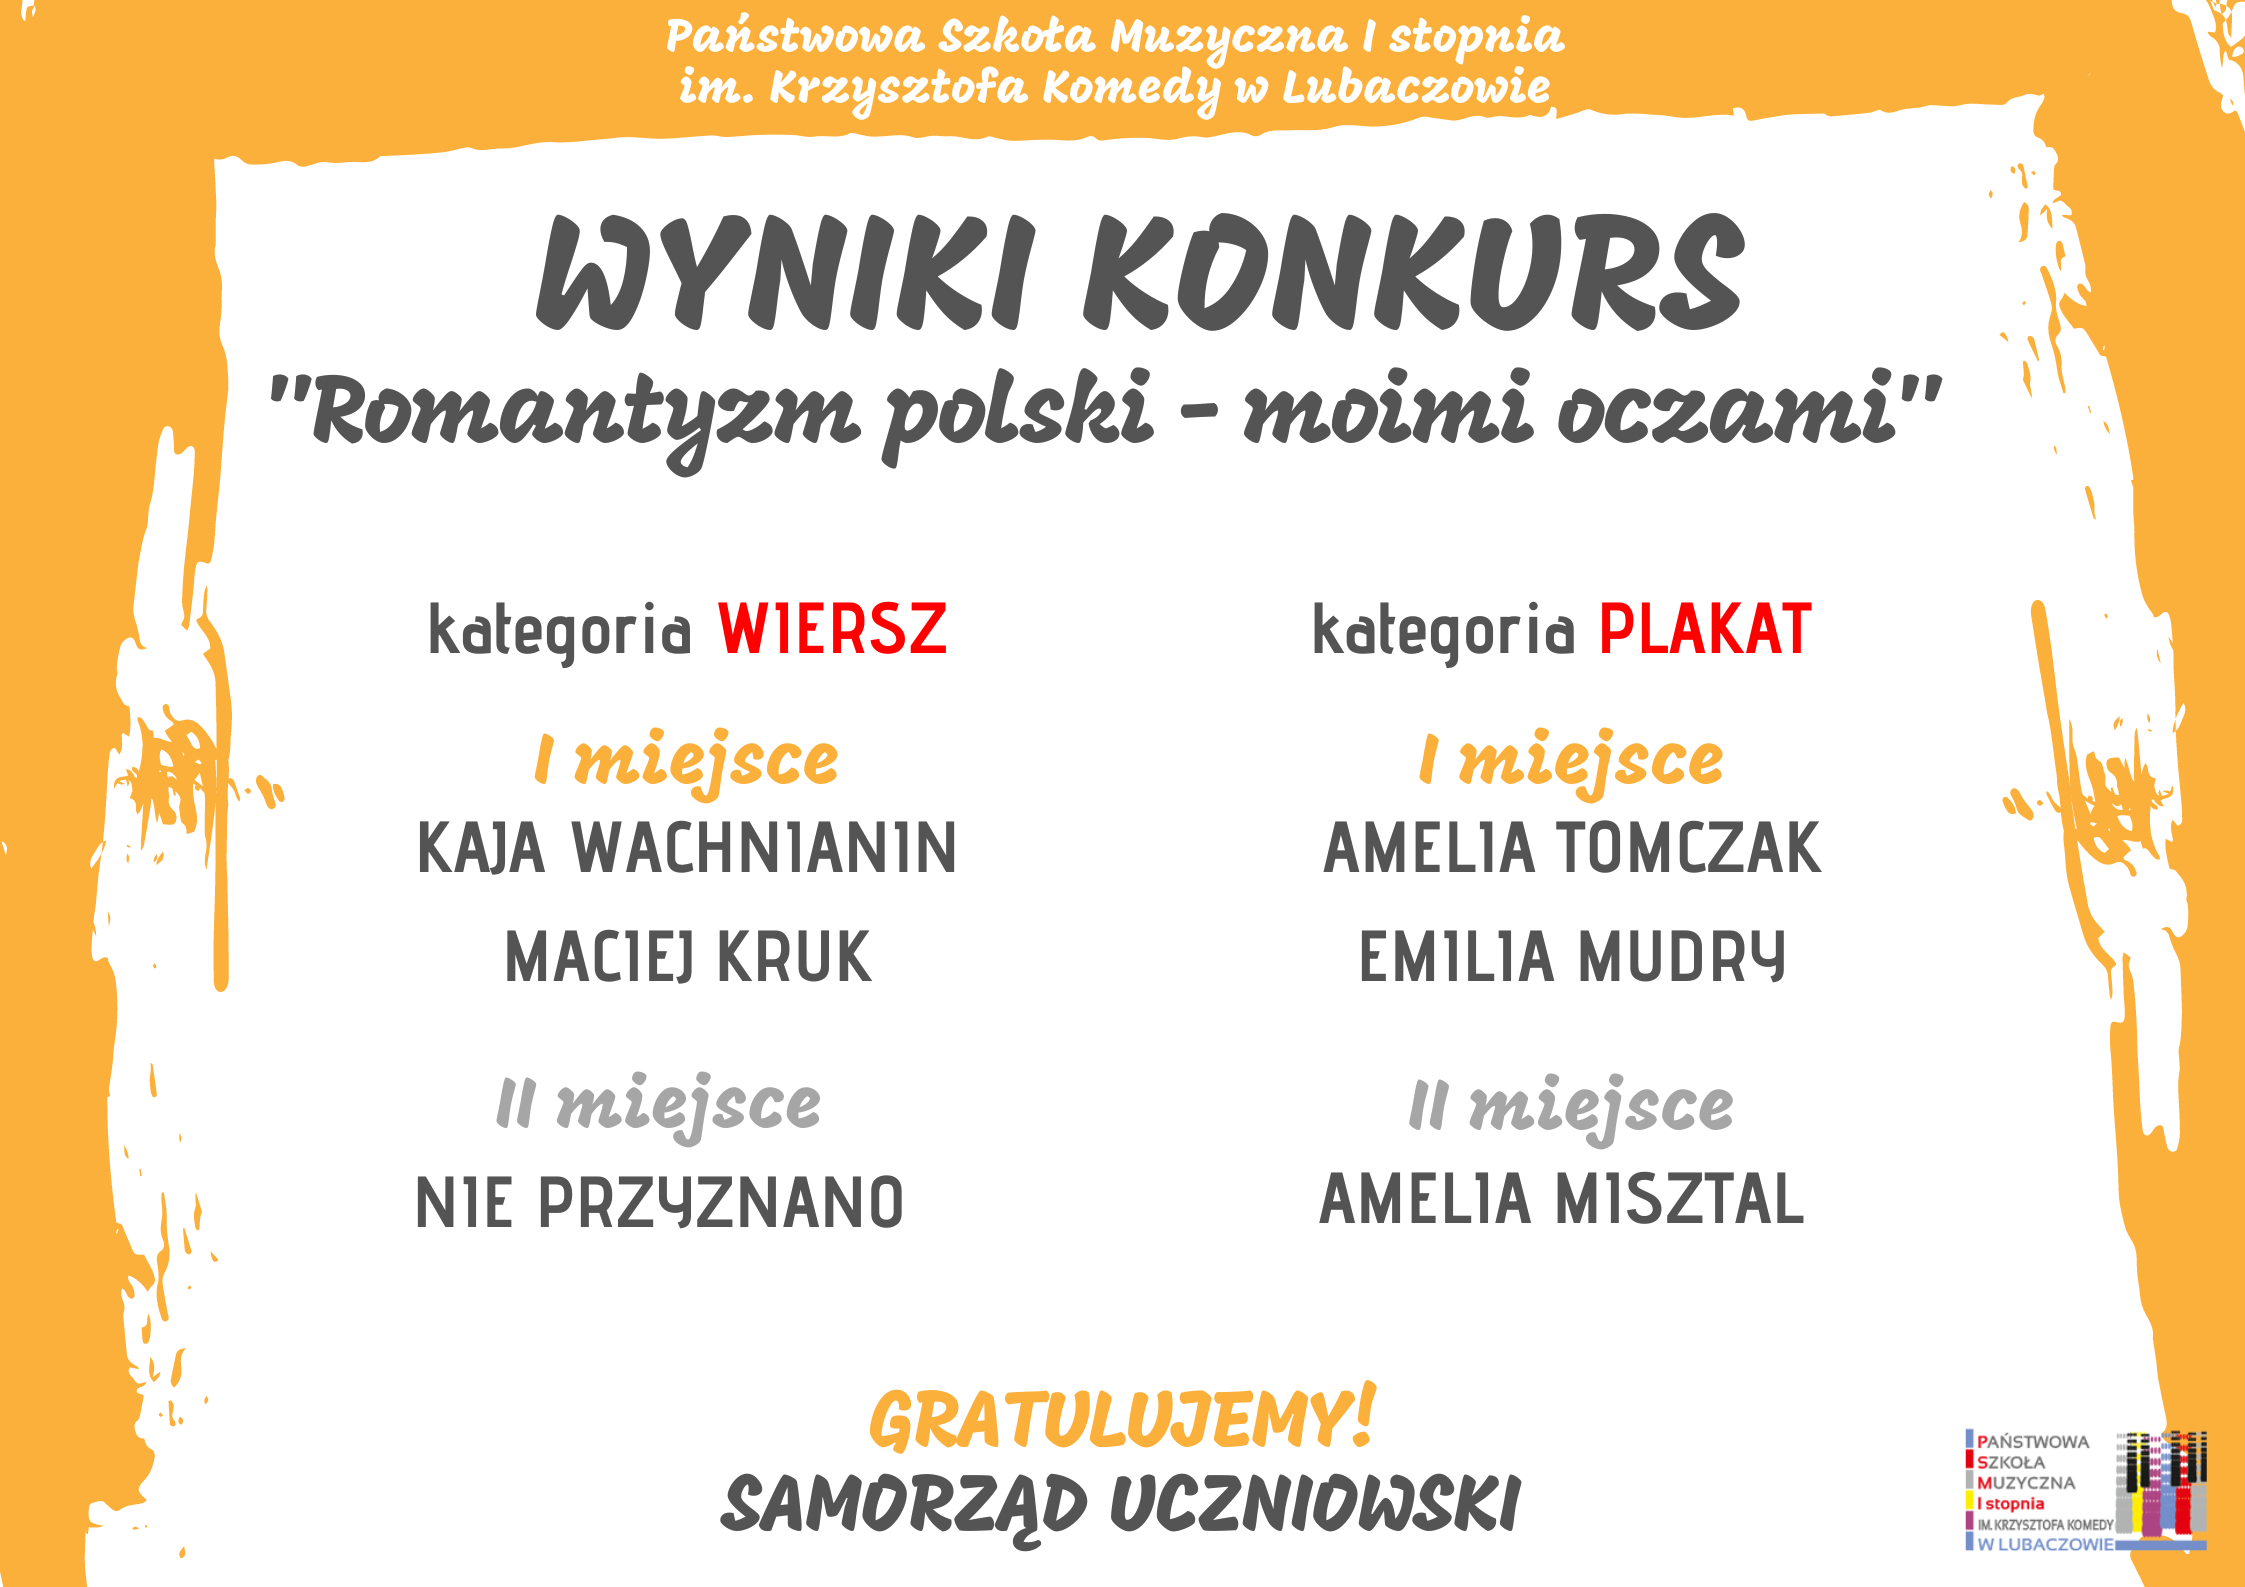 Plakat na białym tle z żółtym obramowaniem Konkursu Romantyzm polski - moimi oczami" i szczegółowym opisem tekstowym konkursu. Wyniki konkursy